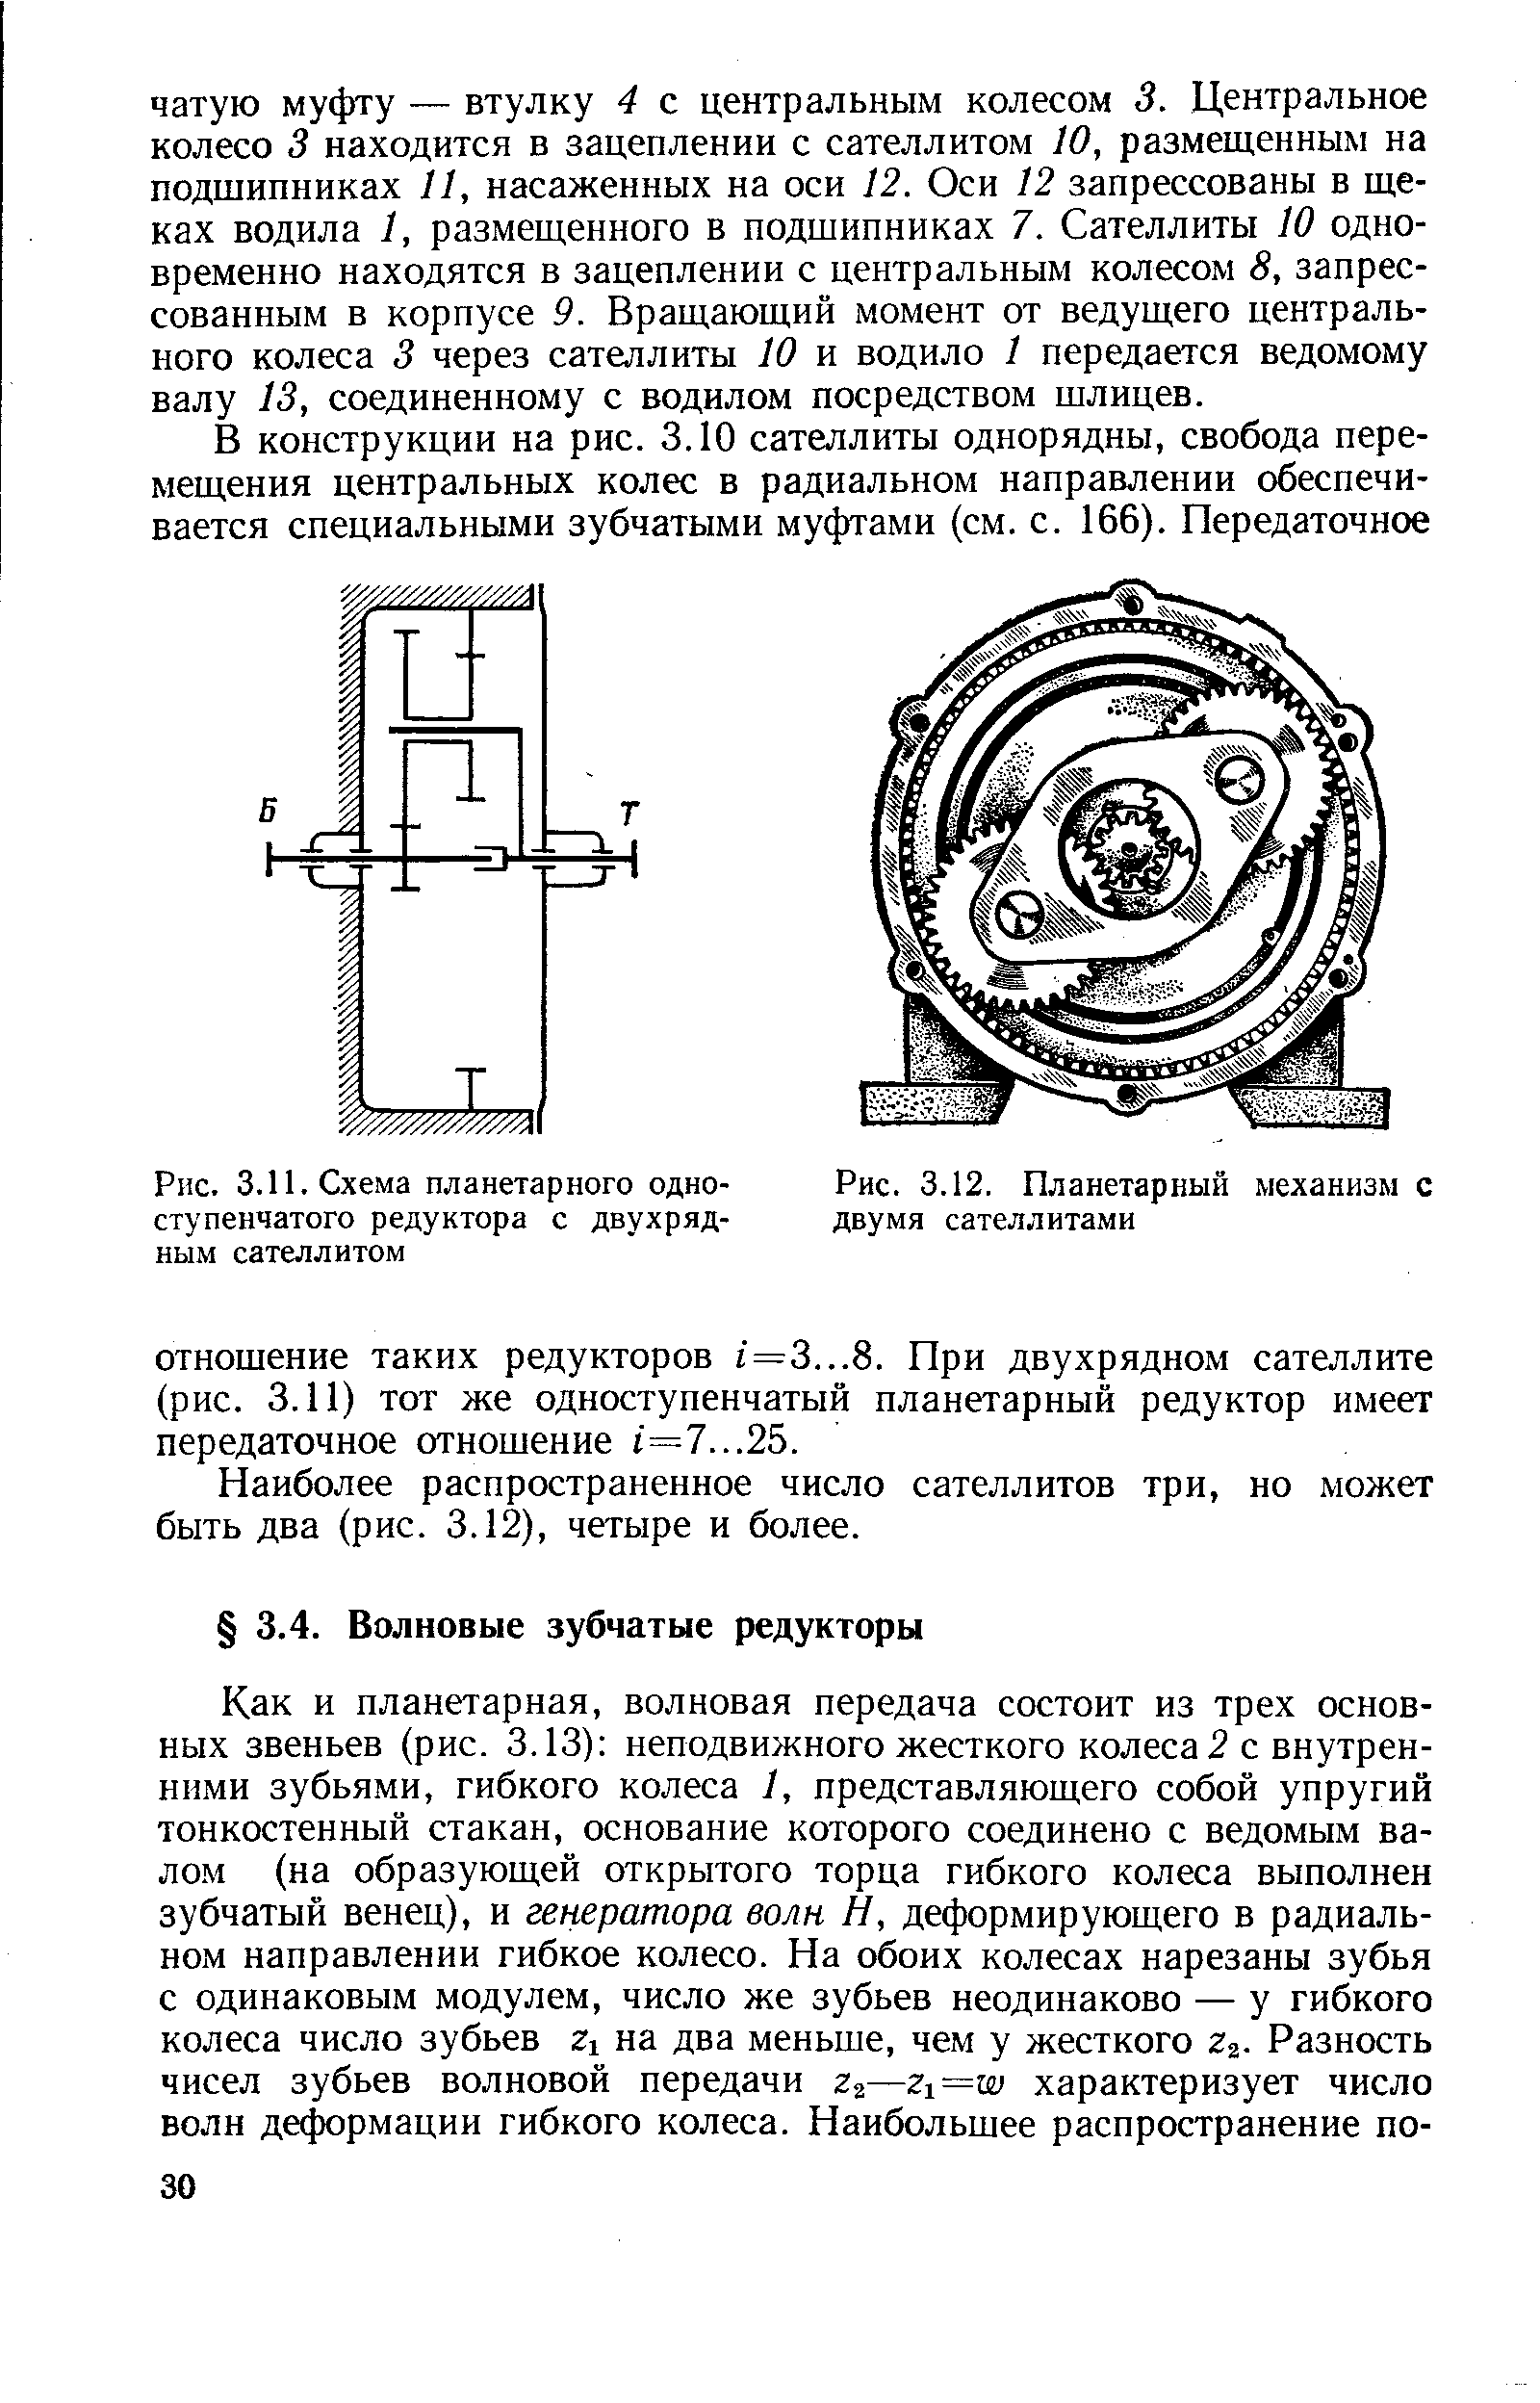 Рис. 3.11. Схема планетарного одноступенчатого редуктора с двухрядным сателлитом
